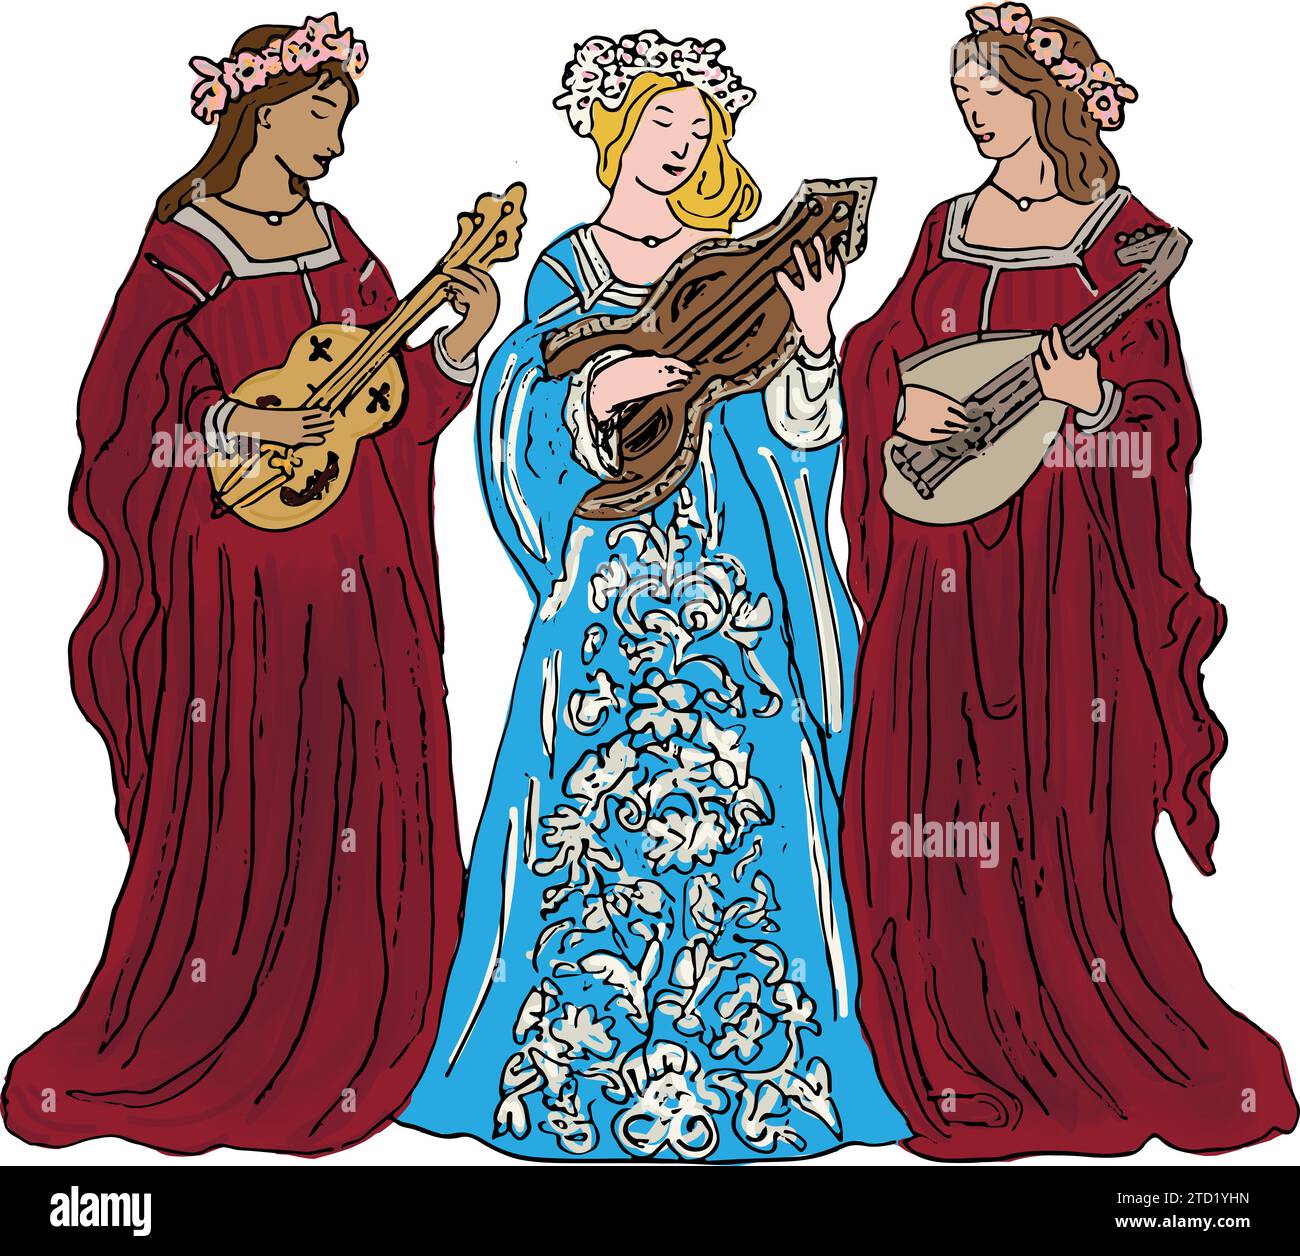 Illustration von drei mittelalterlichen Spielerinnen, die Saiteninstrumente spielen, roten und blauen Kleidern, Blumen im Haar Stock Vektor